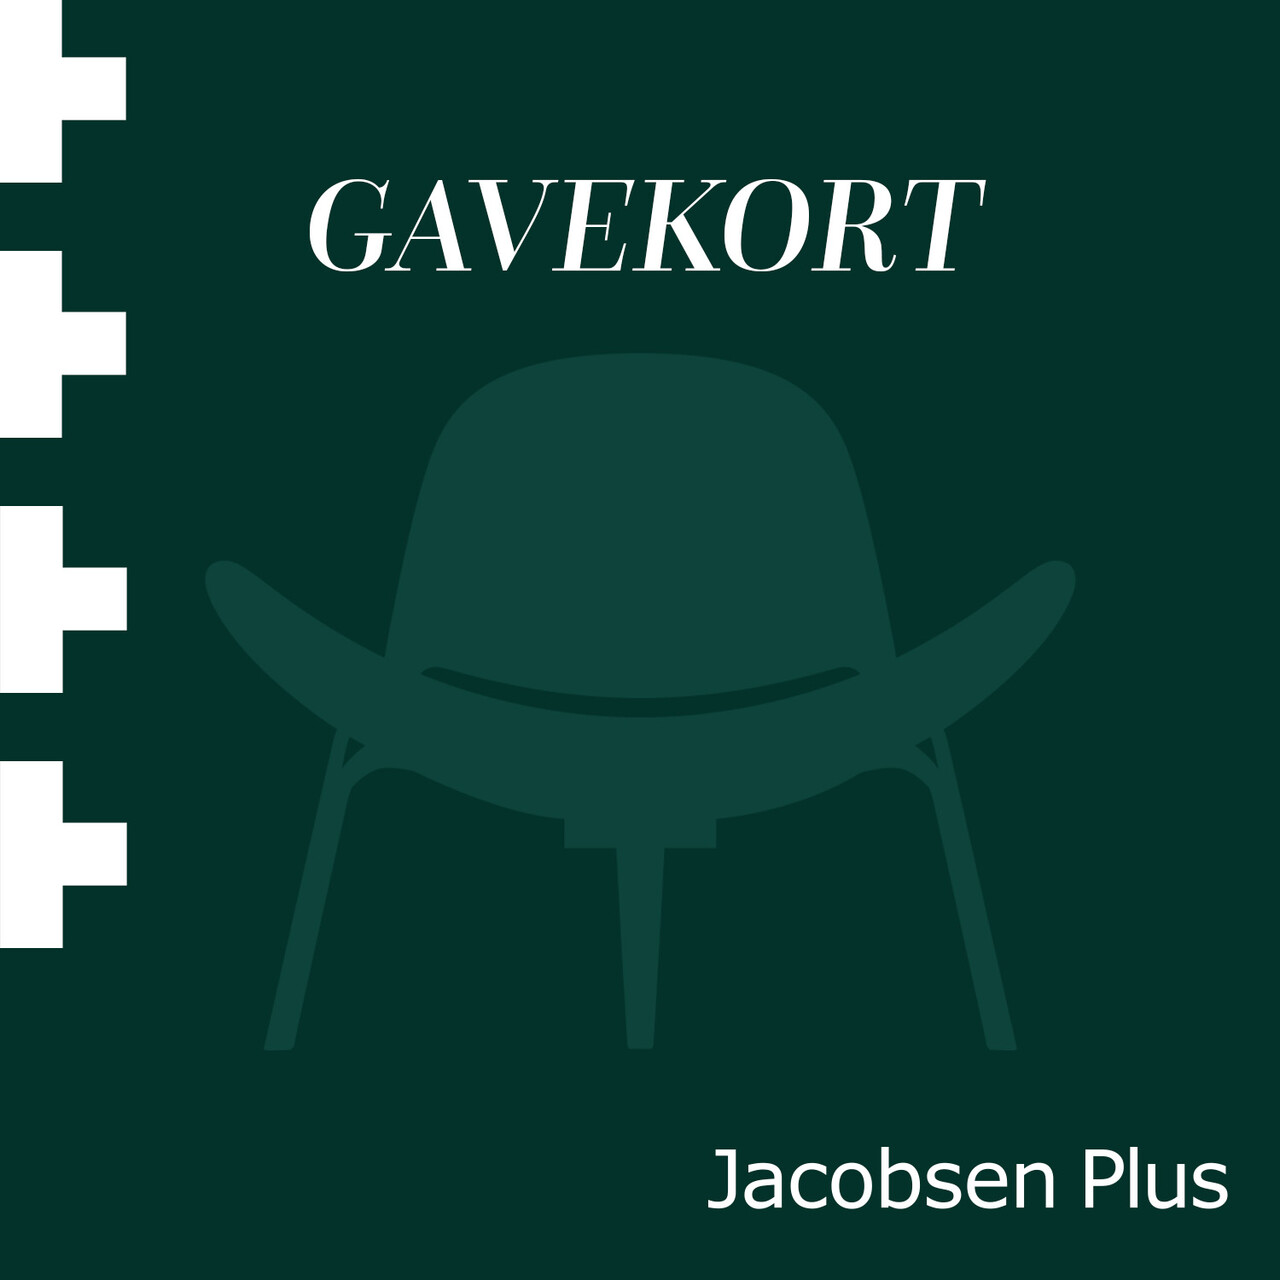 Elektronisk gavekort til Jacobsen Plus (1)